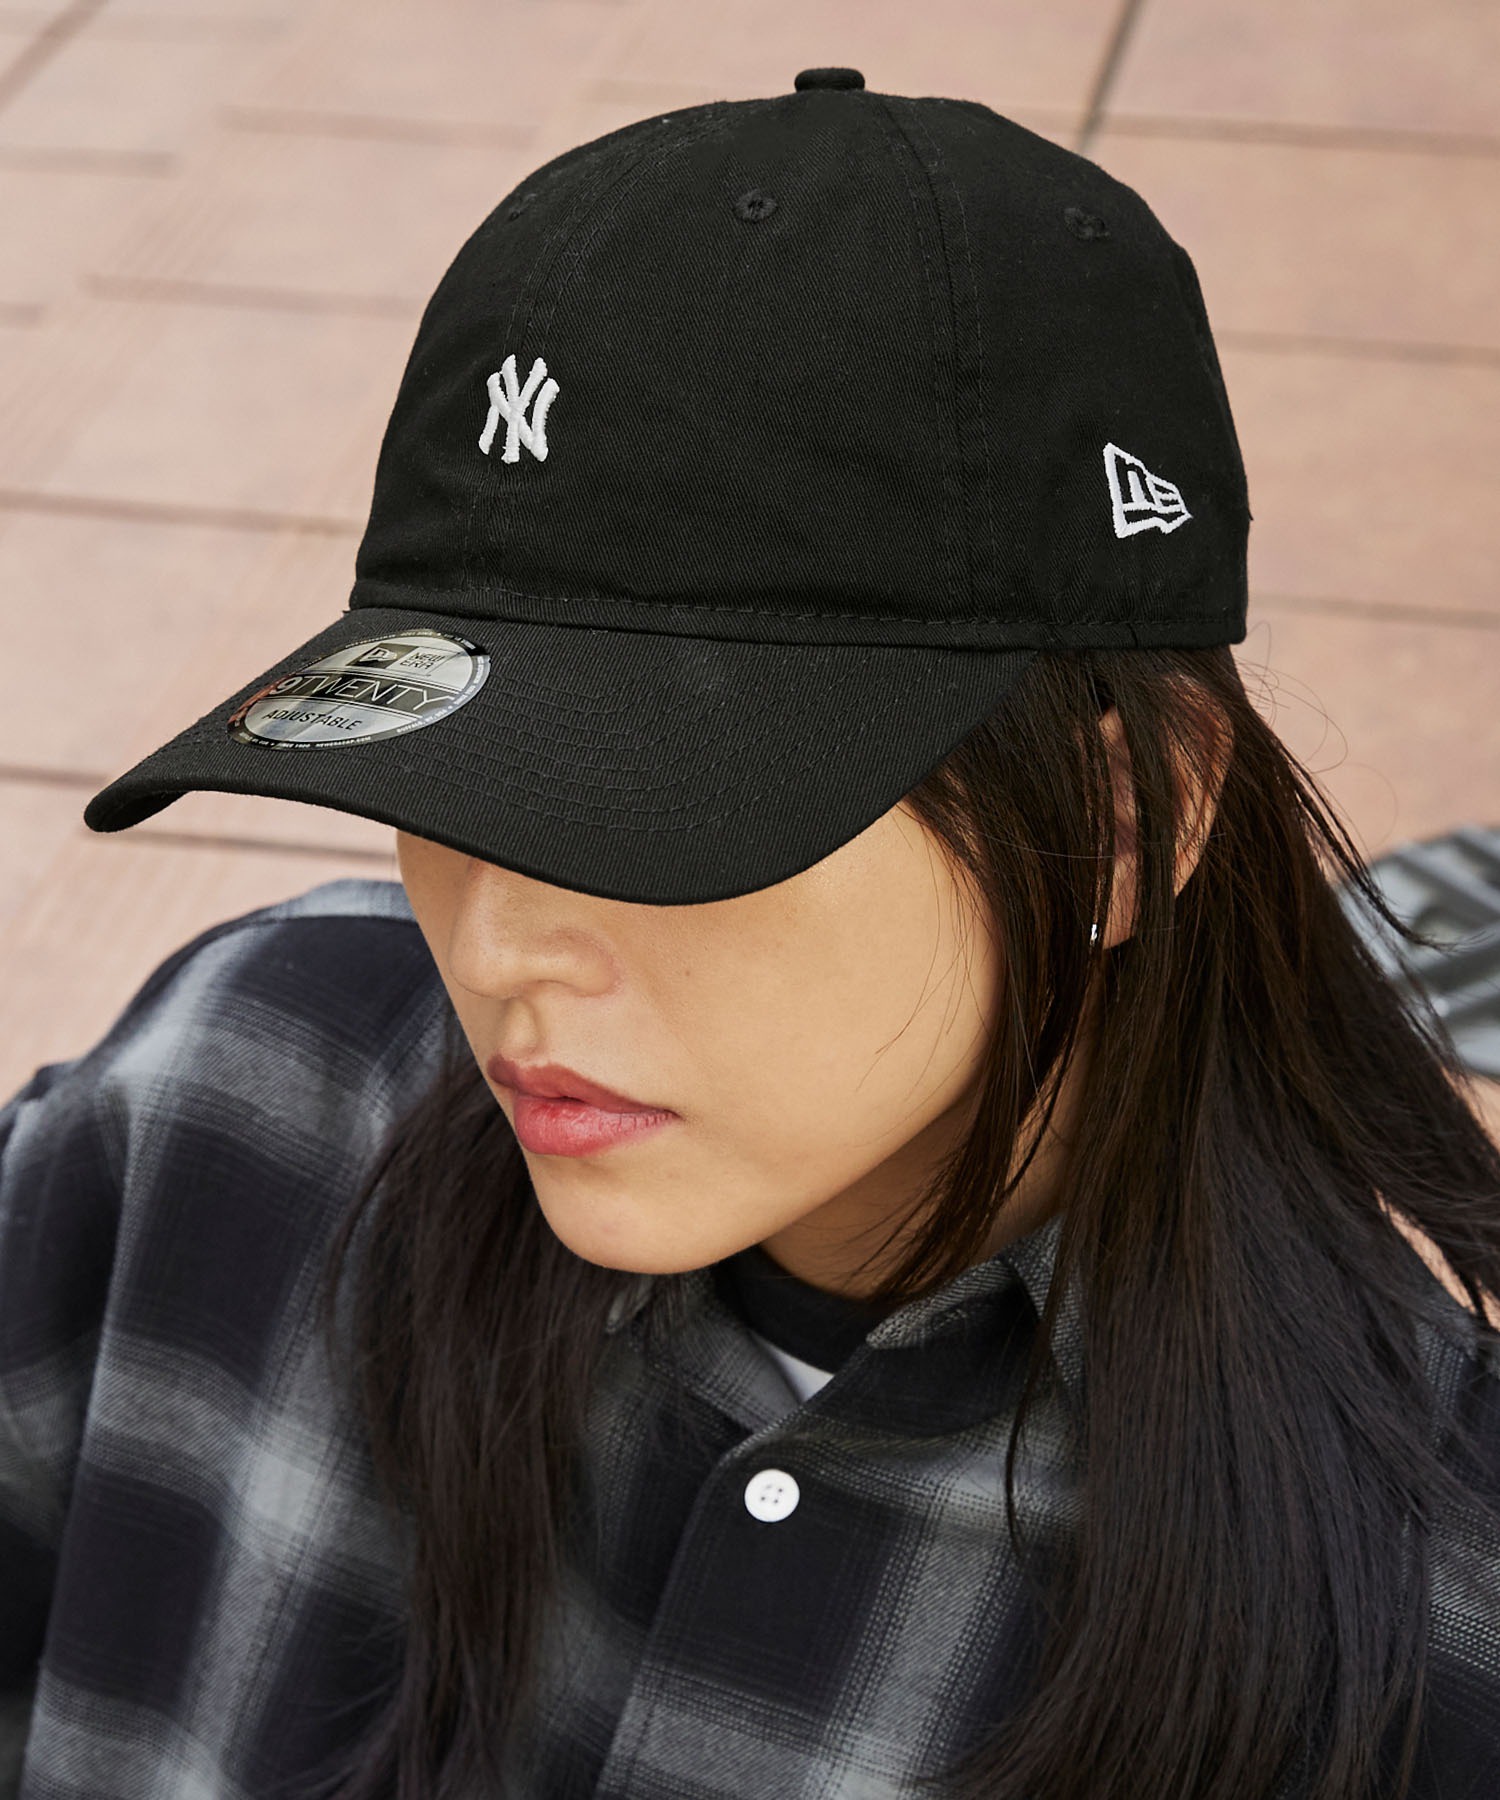 完全送料無料 野球帽 帽子 キャップ グレー 黒 シンプル ストリート カジュアル